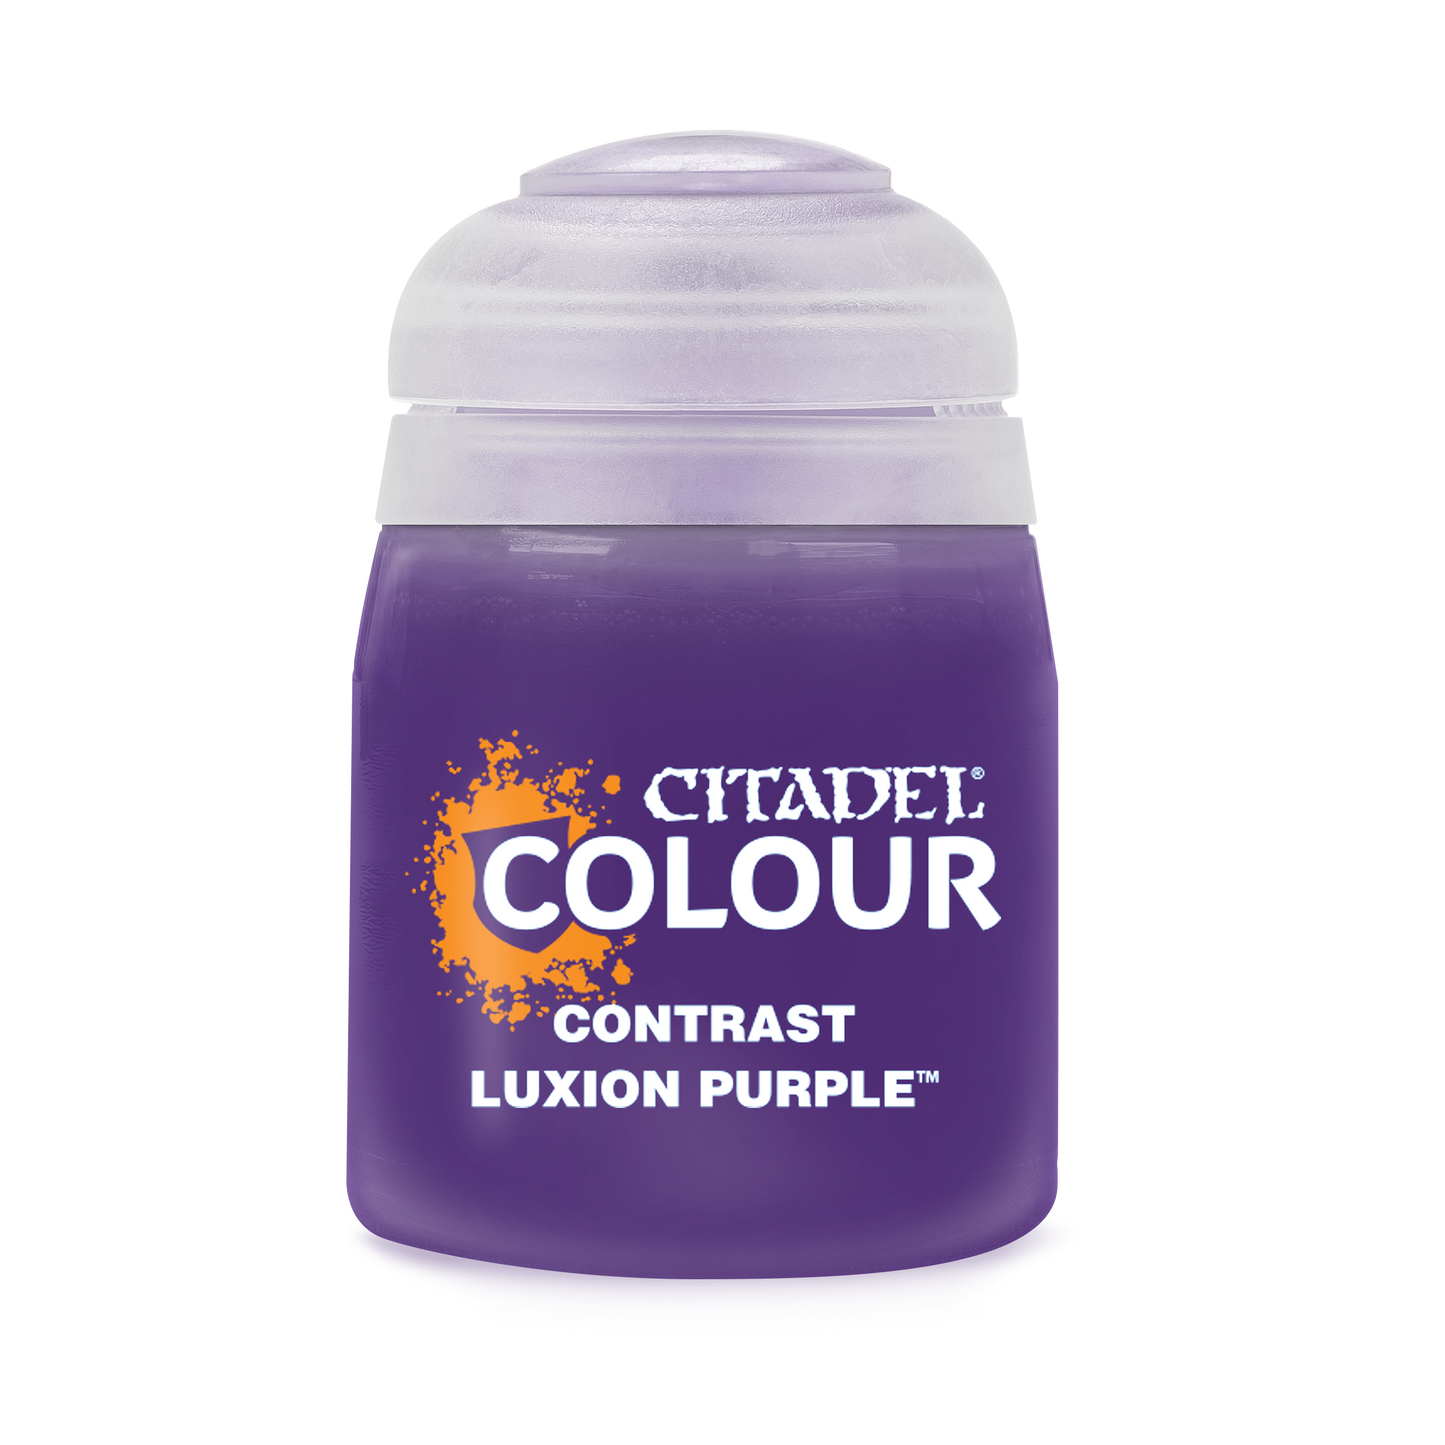 Luxion Purple - Contrast